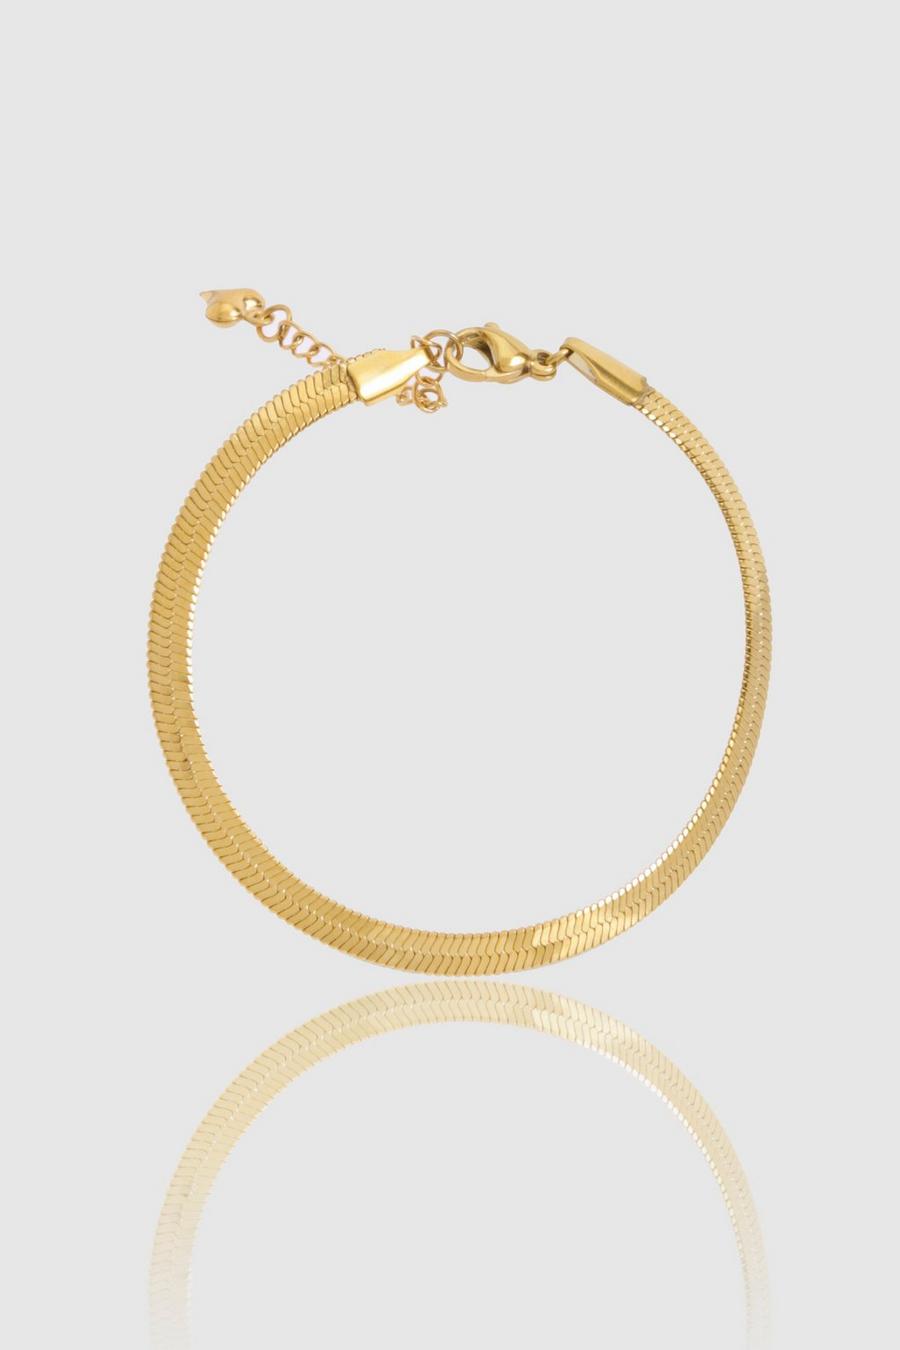 Gold Stainless Steel Snake Chain Bracelet 